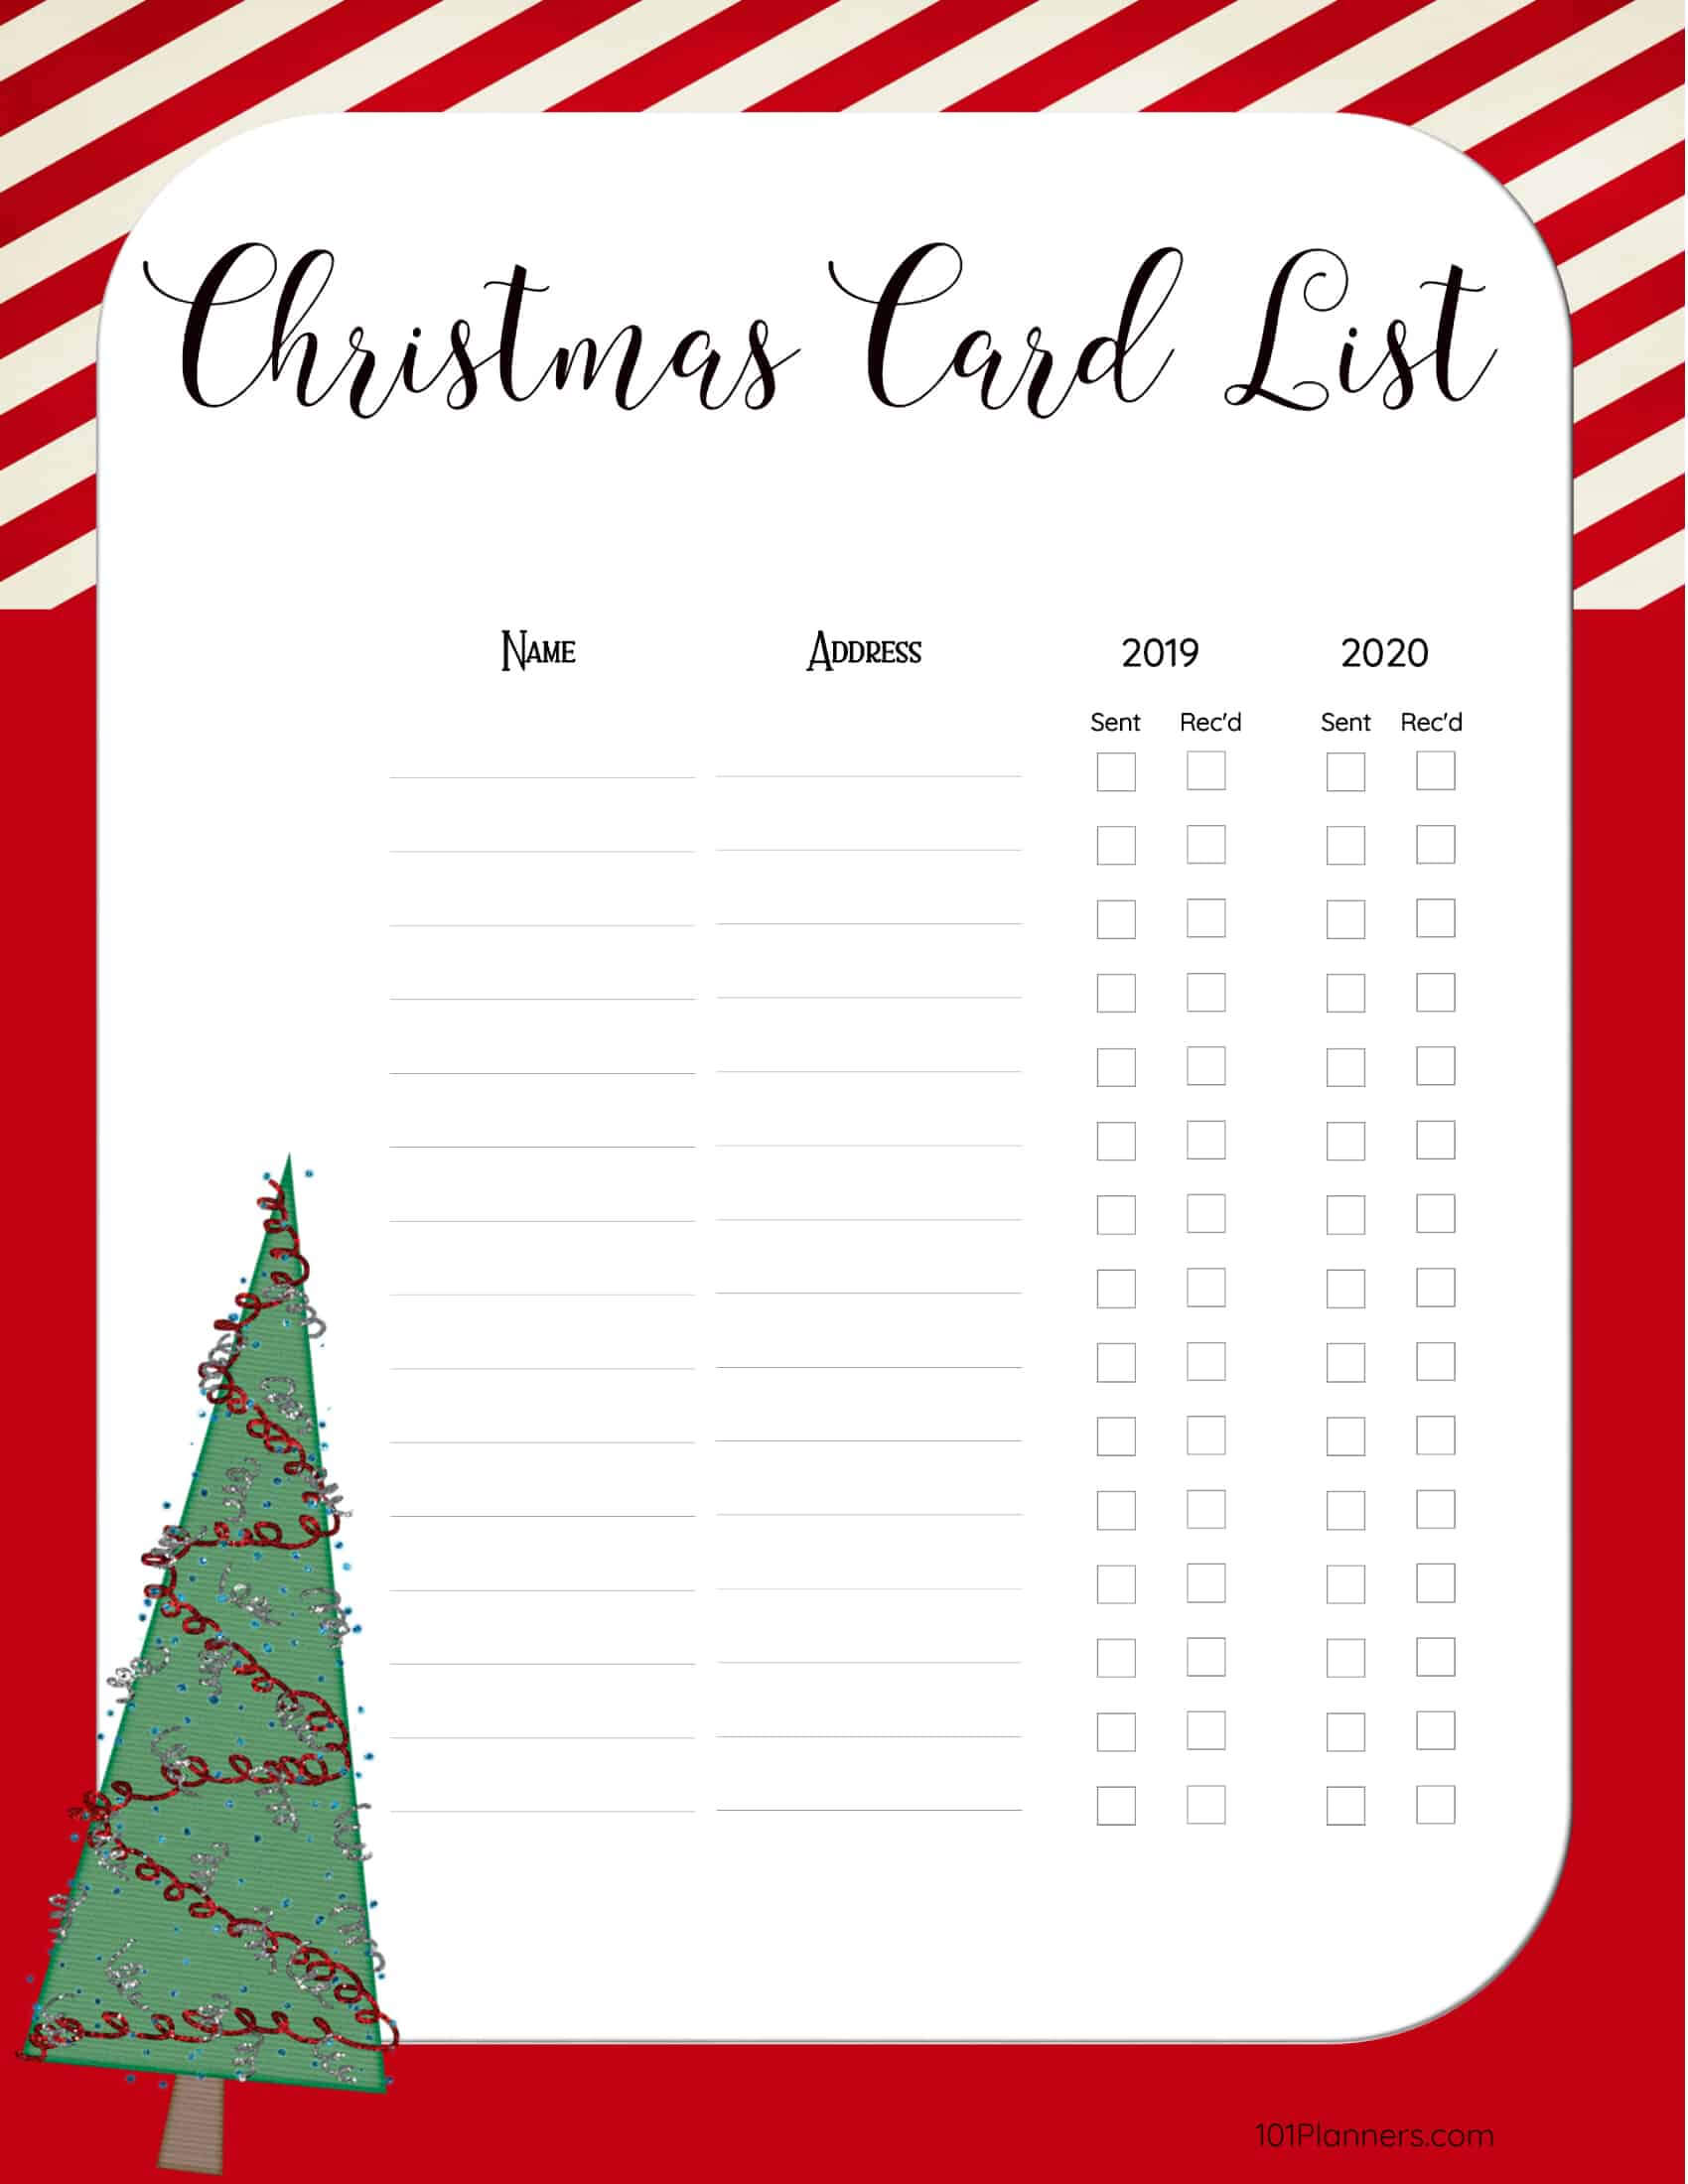 free-printable-christmas-gift-list-template-regarding-christmas-card